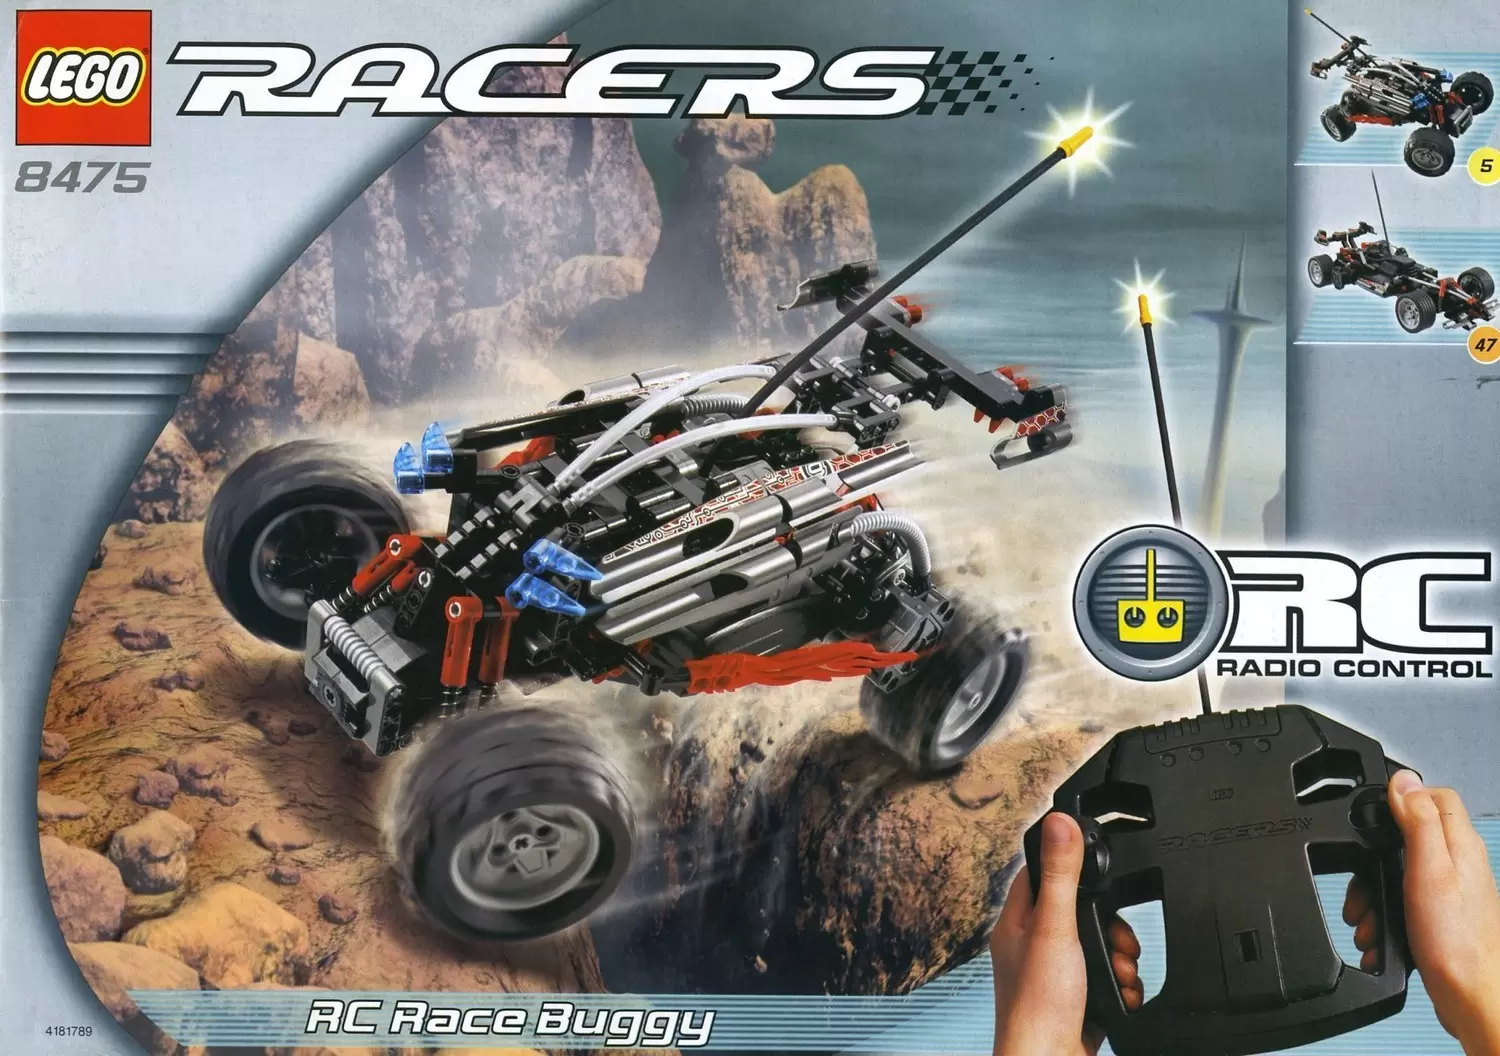 LEGO Racers - RC Race Buggy